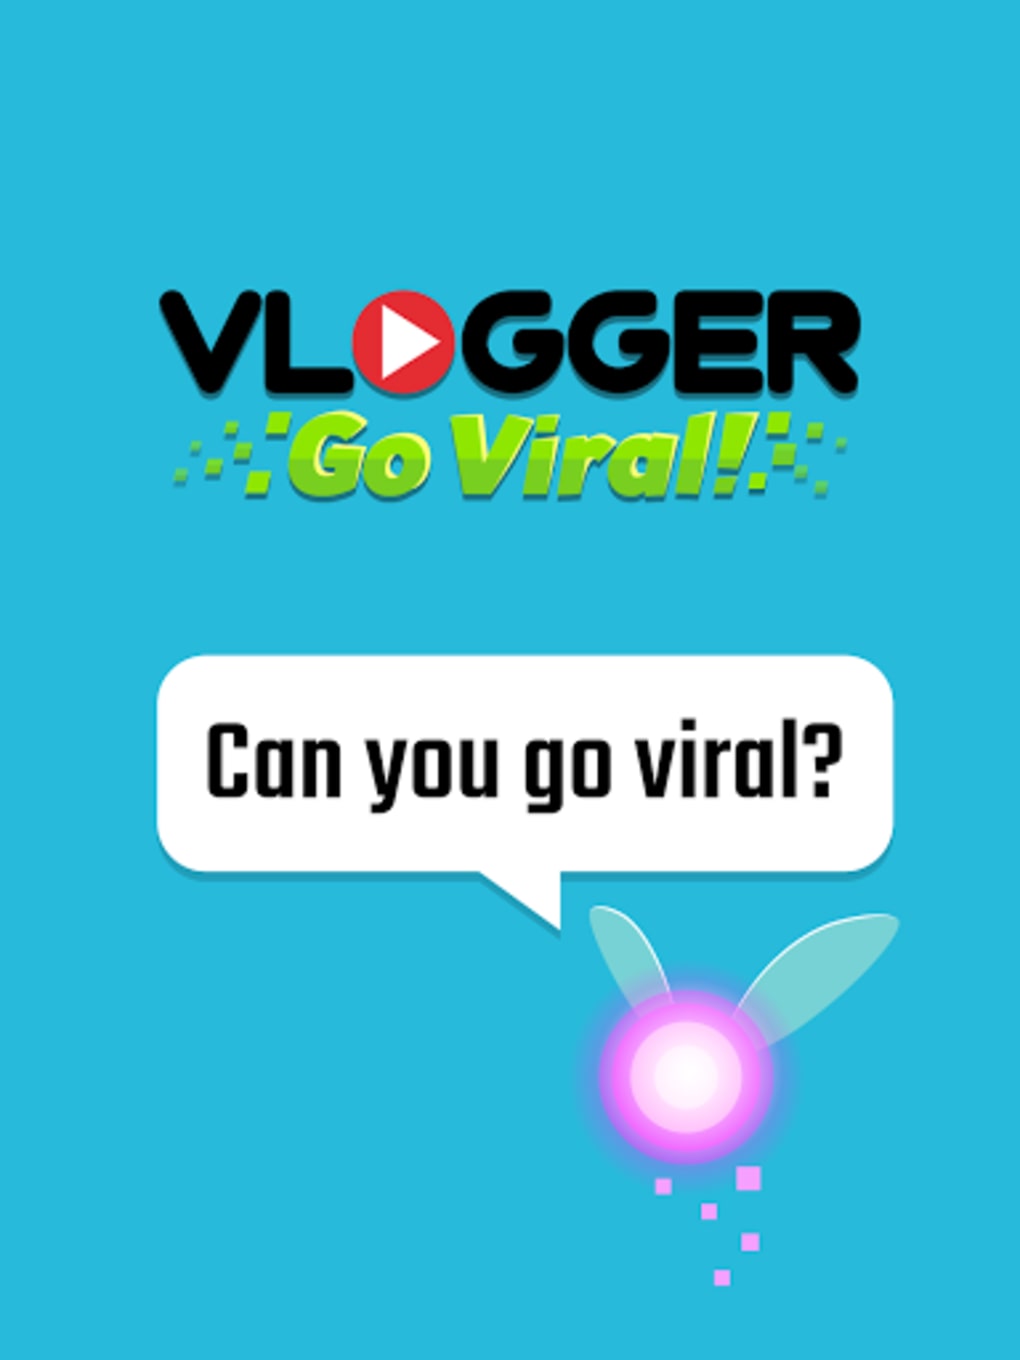 Vlogger Go Viral: Tuber Life Mod apk download - Tapps Games Vlogger Go  Viral: Tuber Life Mod APK 2.43.30 free for Android.